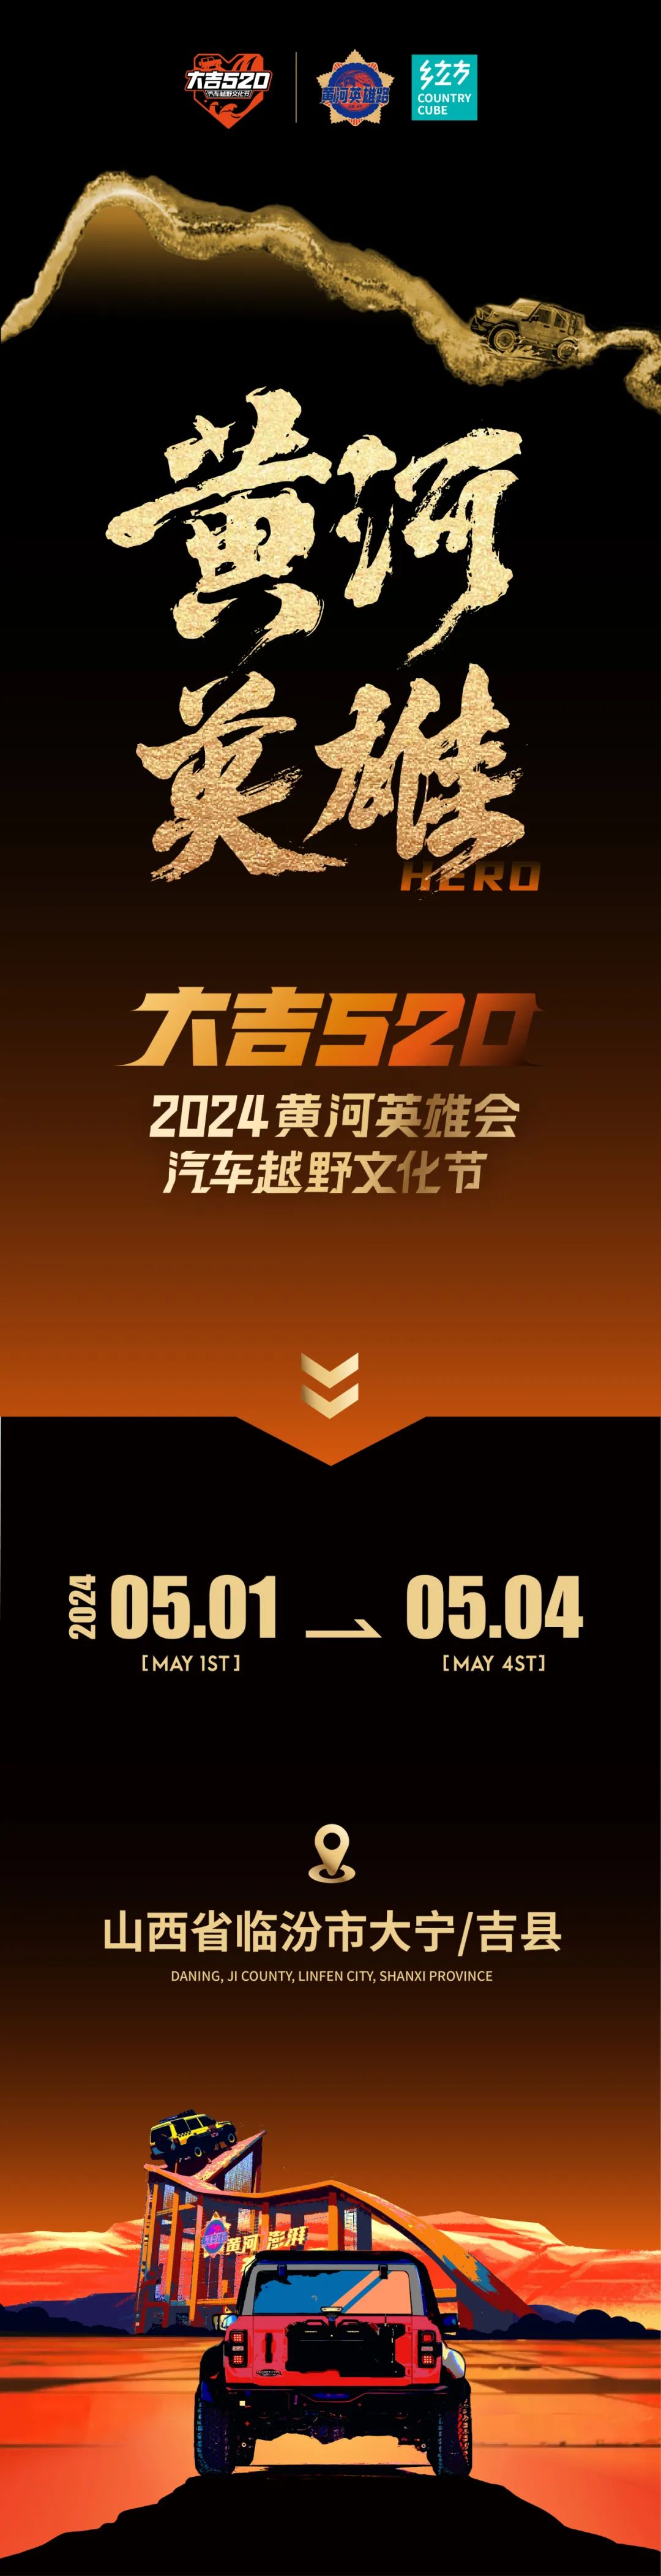 黄河澎湃 英雄无畏 | 第三届“大吉520黄河英雄会·汽车越野文化节”即将开赛！